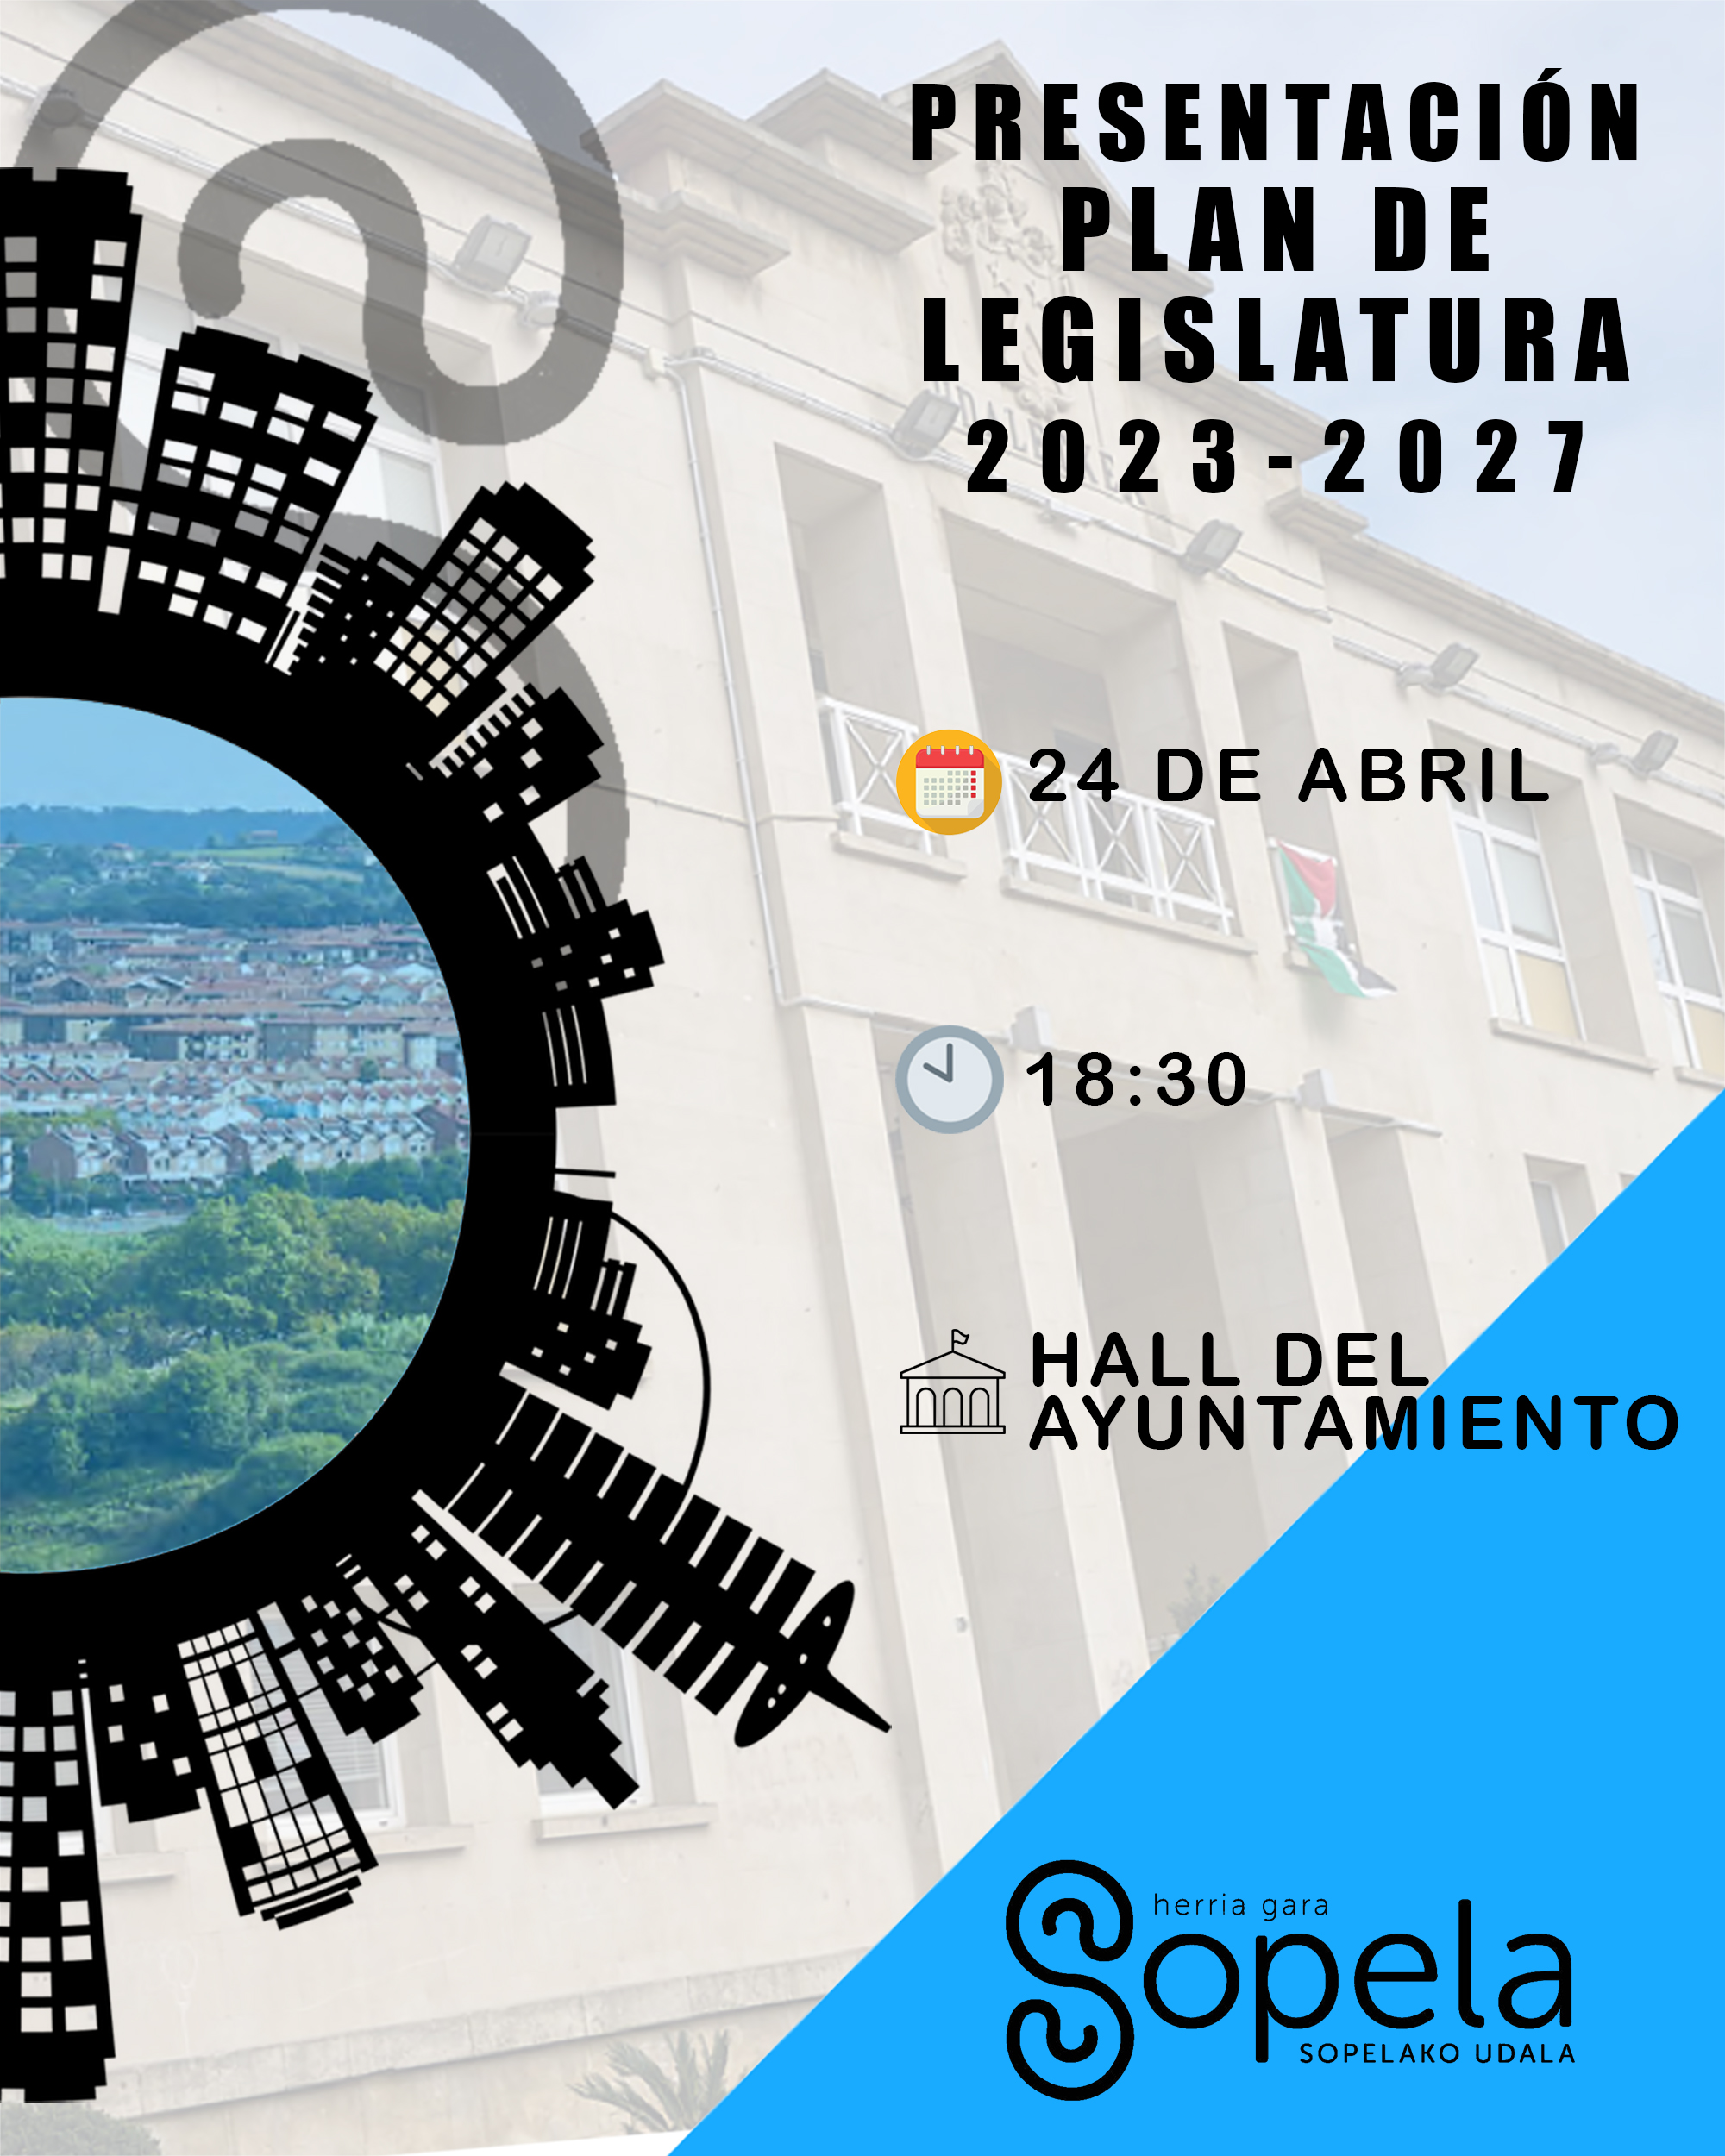 ¡Presentación del Plan de Legislatura el 24 de abril!